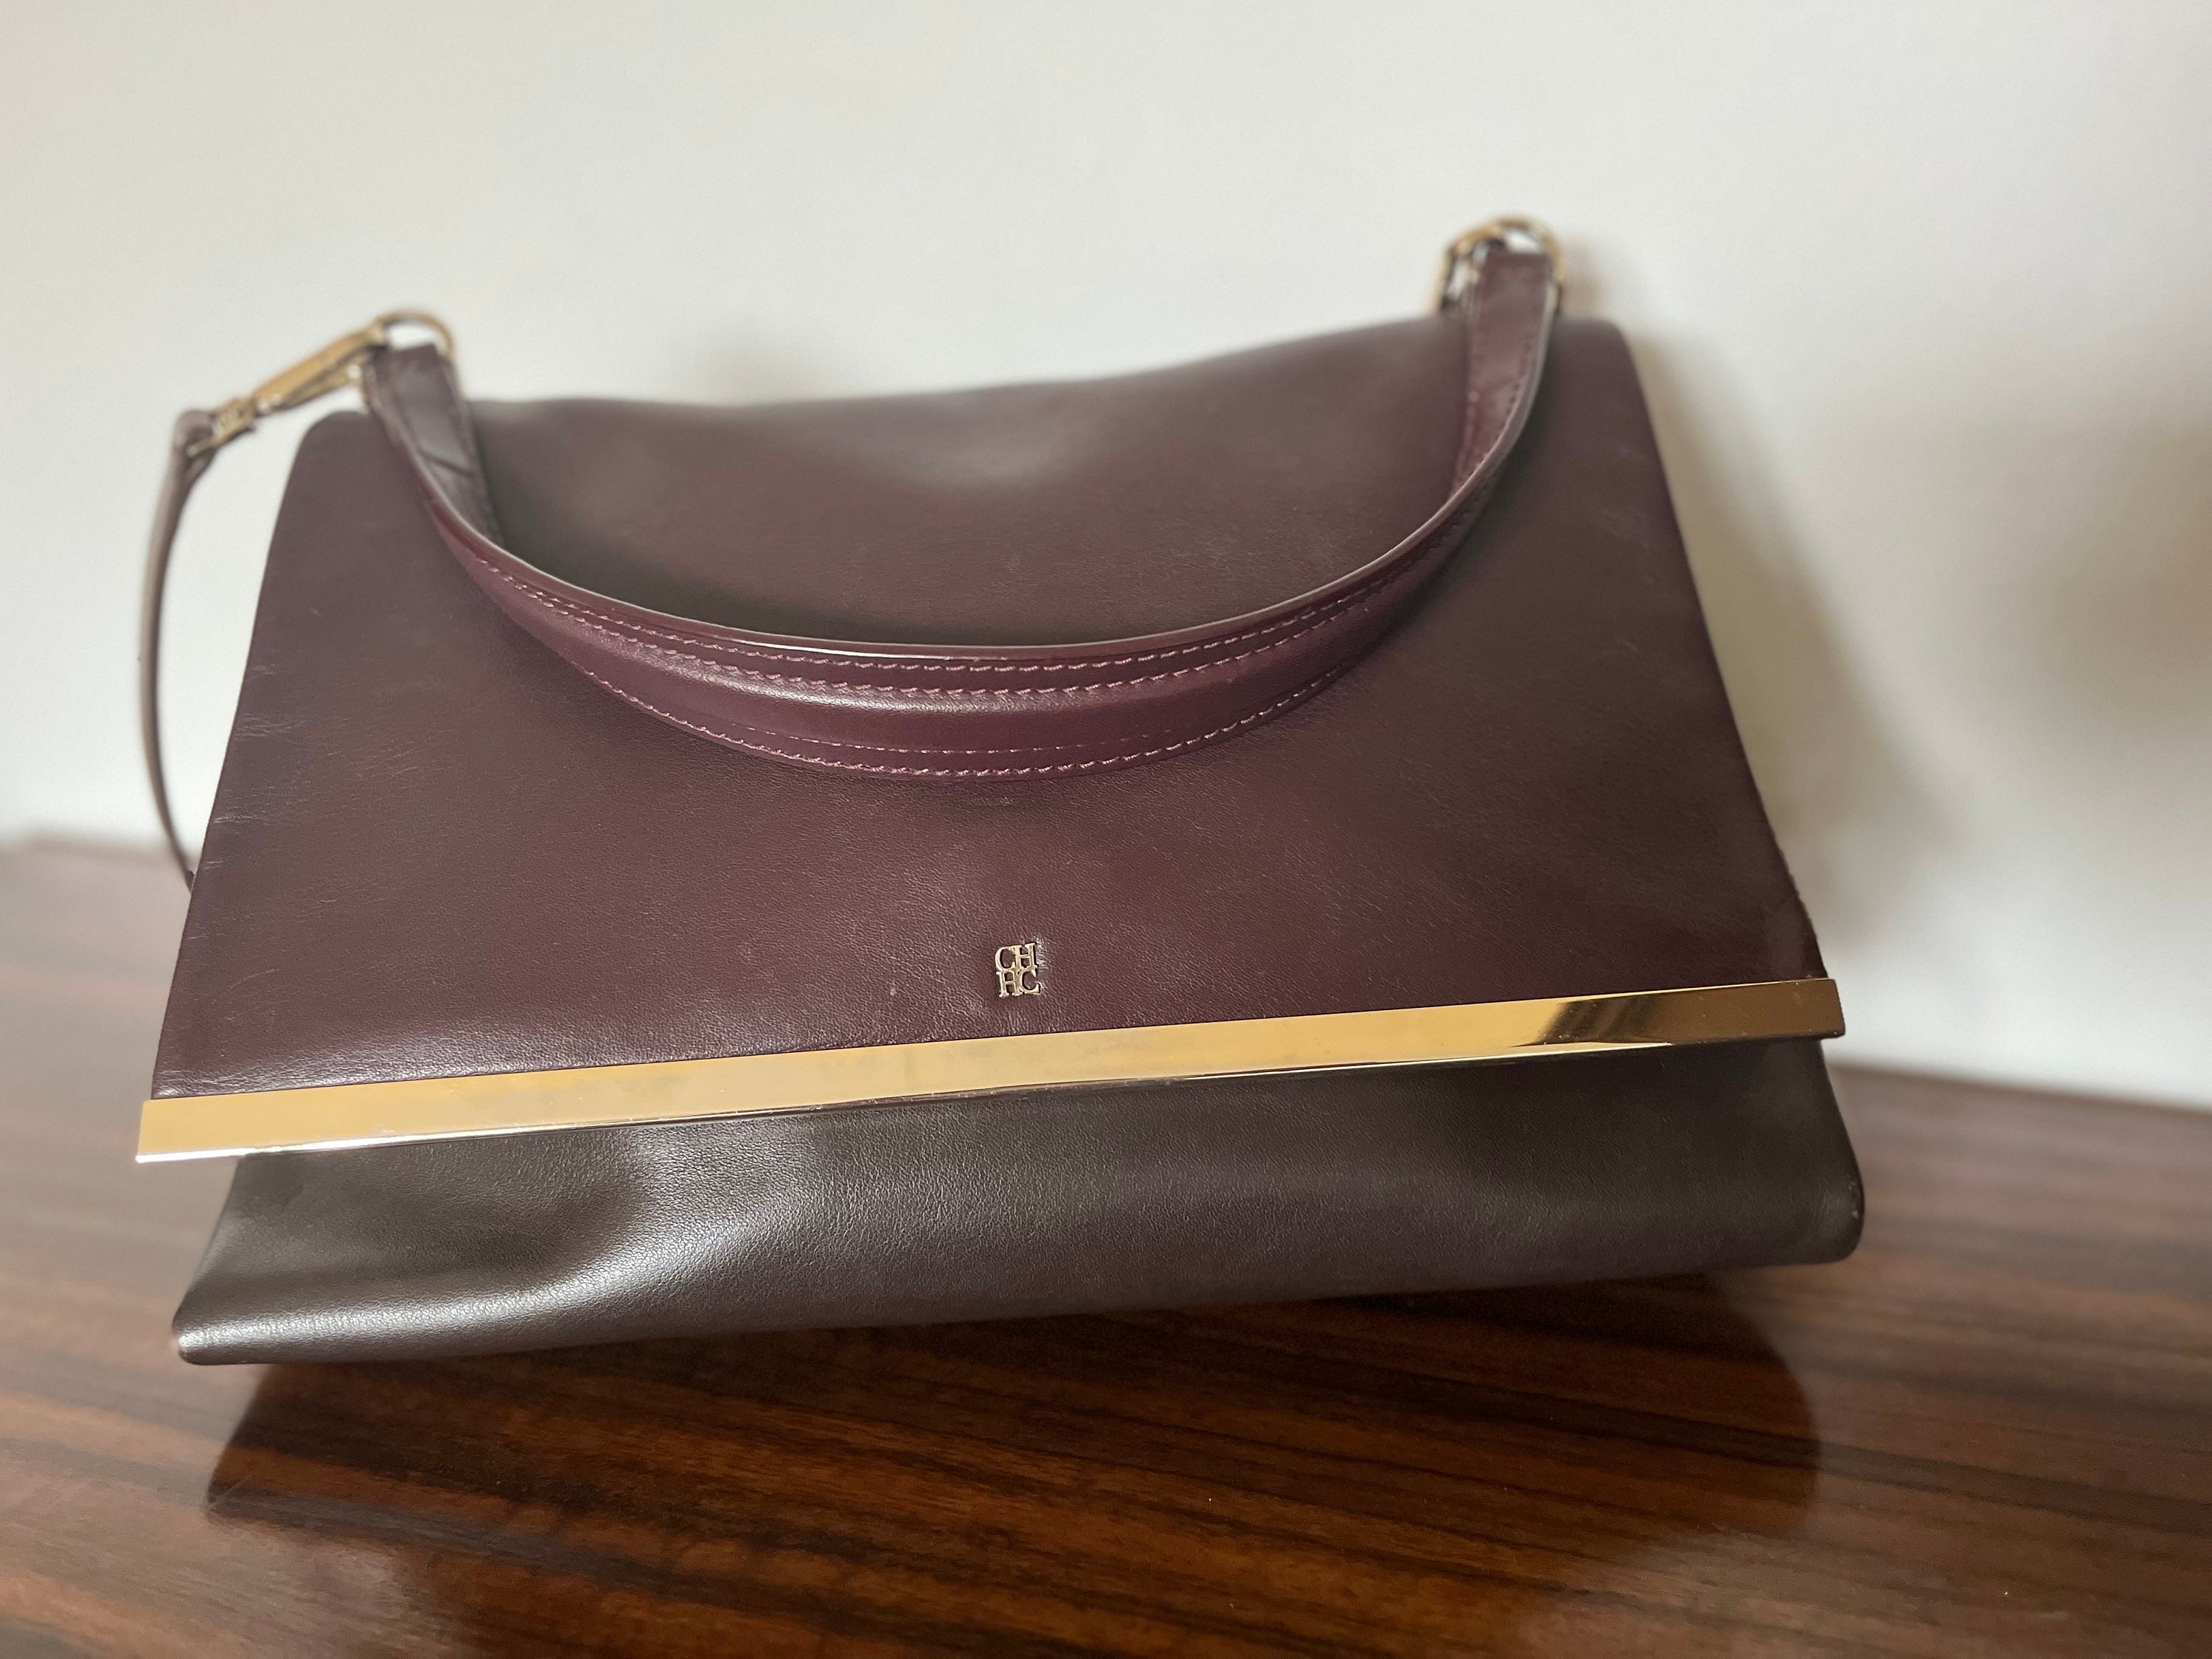 Carolina Herrera Bag / Made in Spain / Burgundy and Brown Bag 